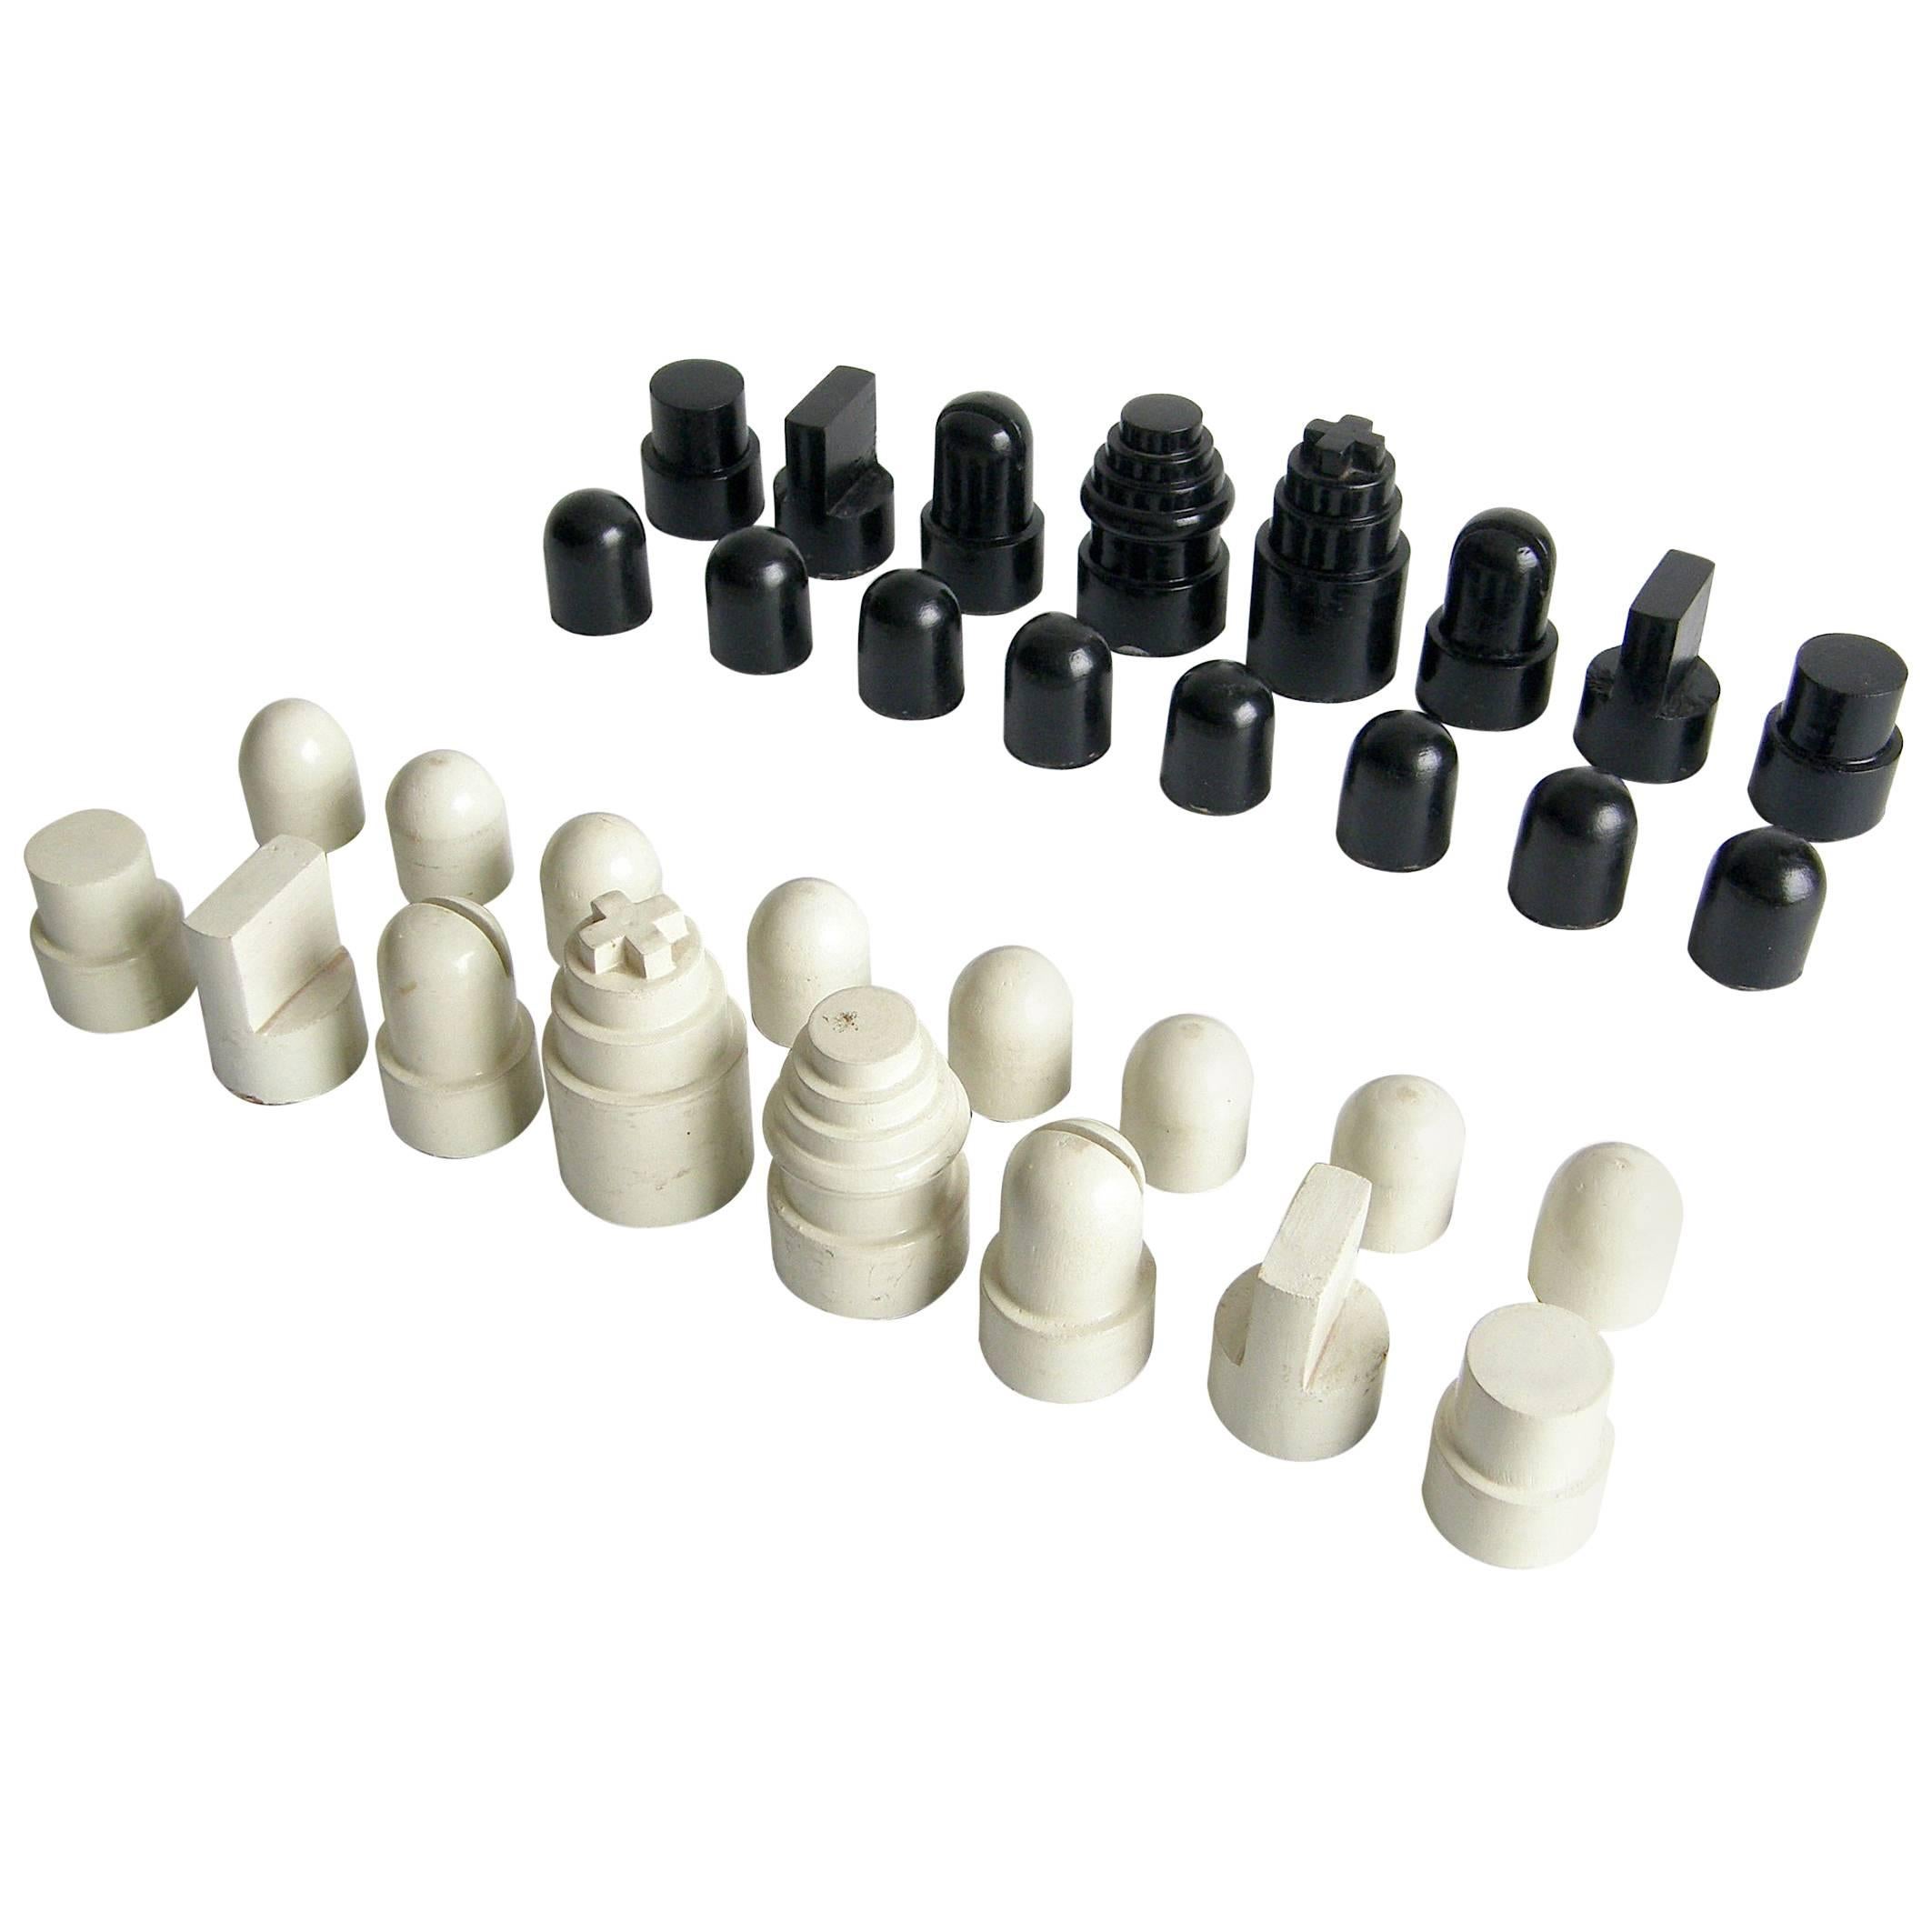 Allan Calhamer Chess Set